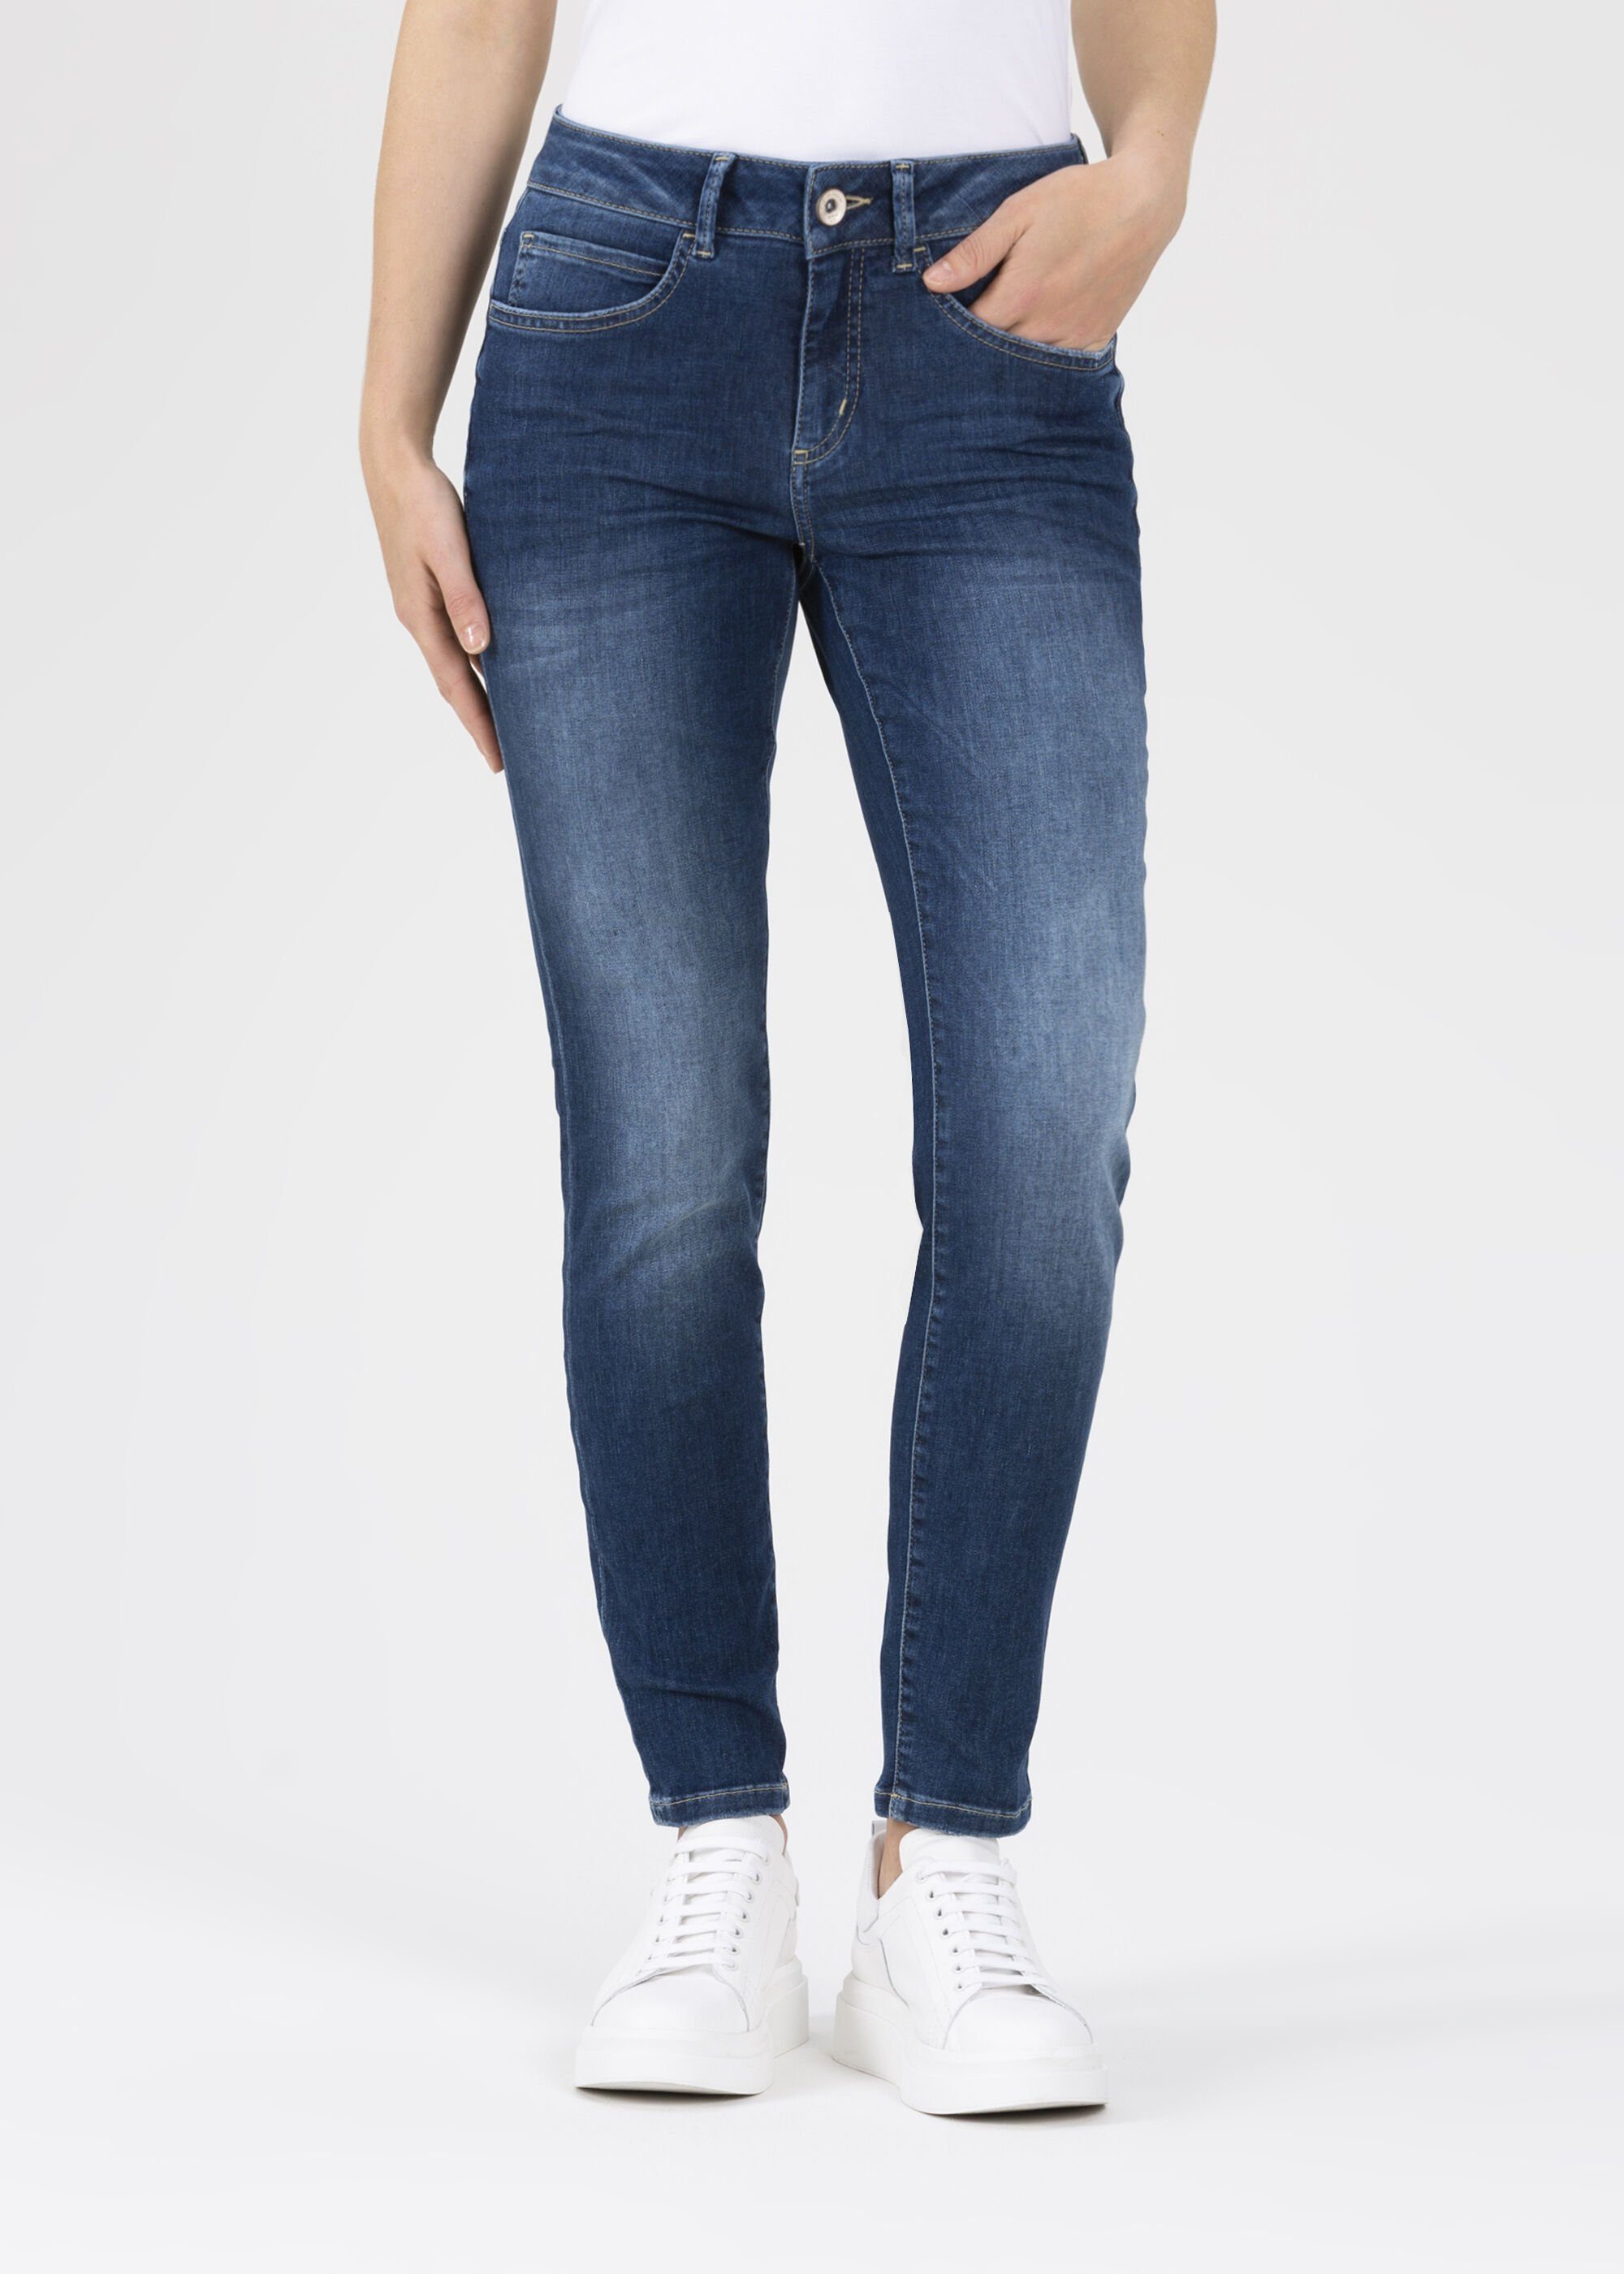 [Einfach zu verwenden] Stehmann Slim-fit-Jeans Peggy Five-Pocket-Stil im